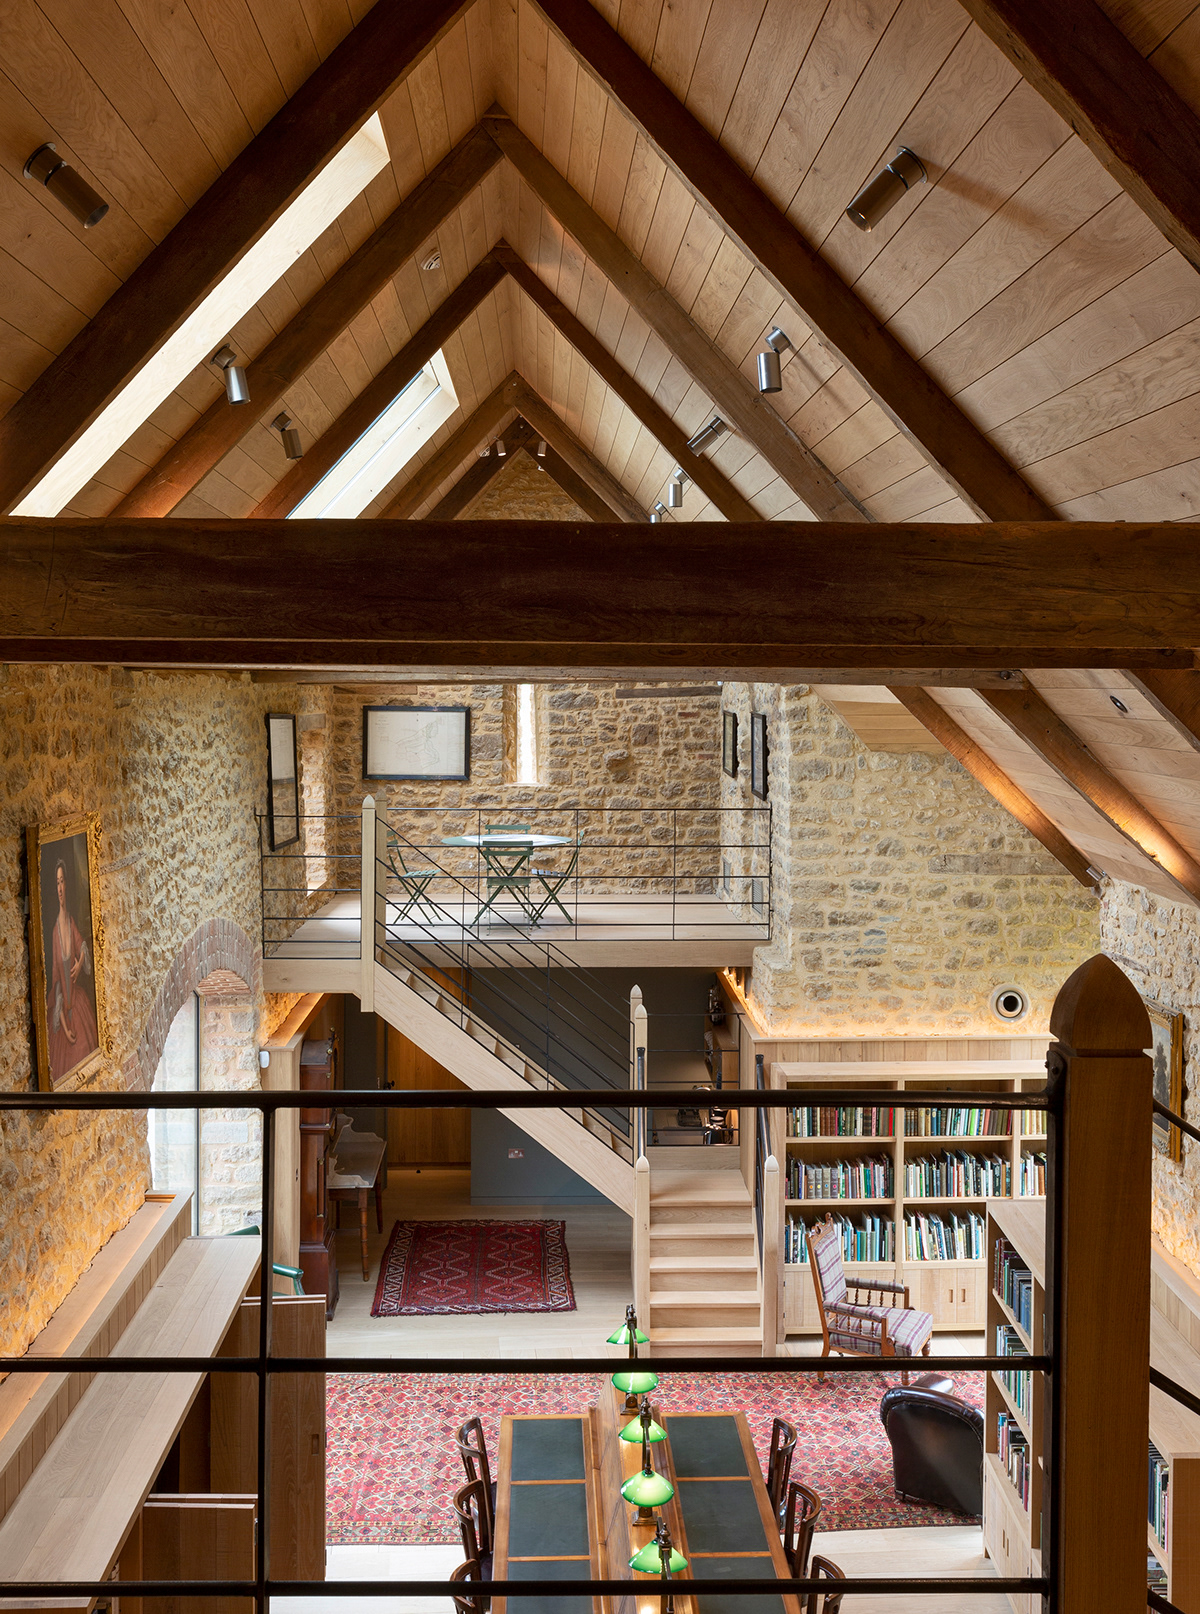 Adobe Portfolio architectural photography architecture Interior interior design  library Renovation Project